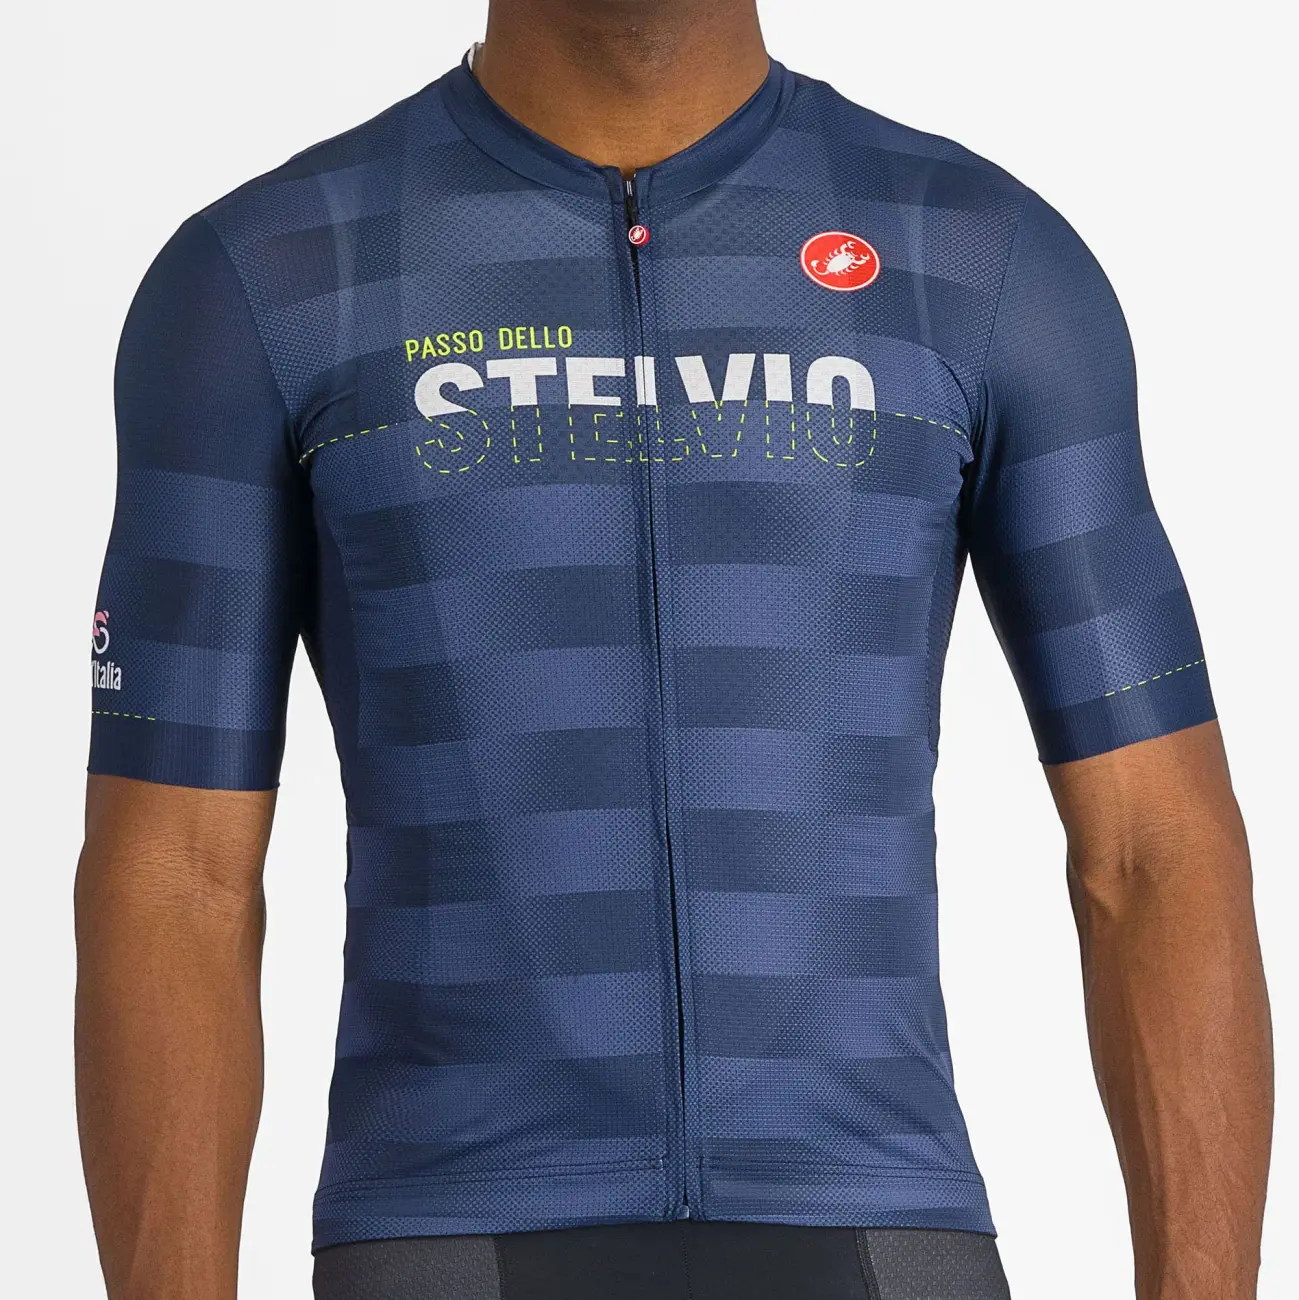 CASTELLI Cyklistický dres s krátkým rukávem - GIRO107 STELVIO - modrá 3XL